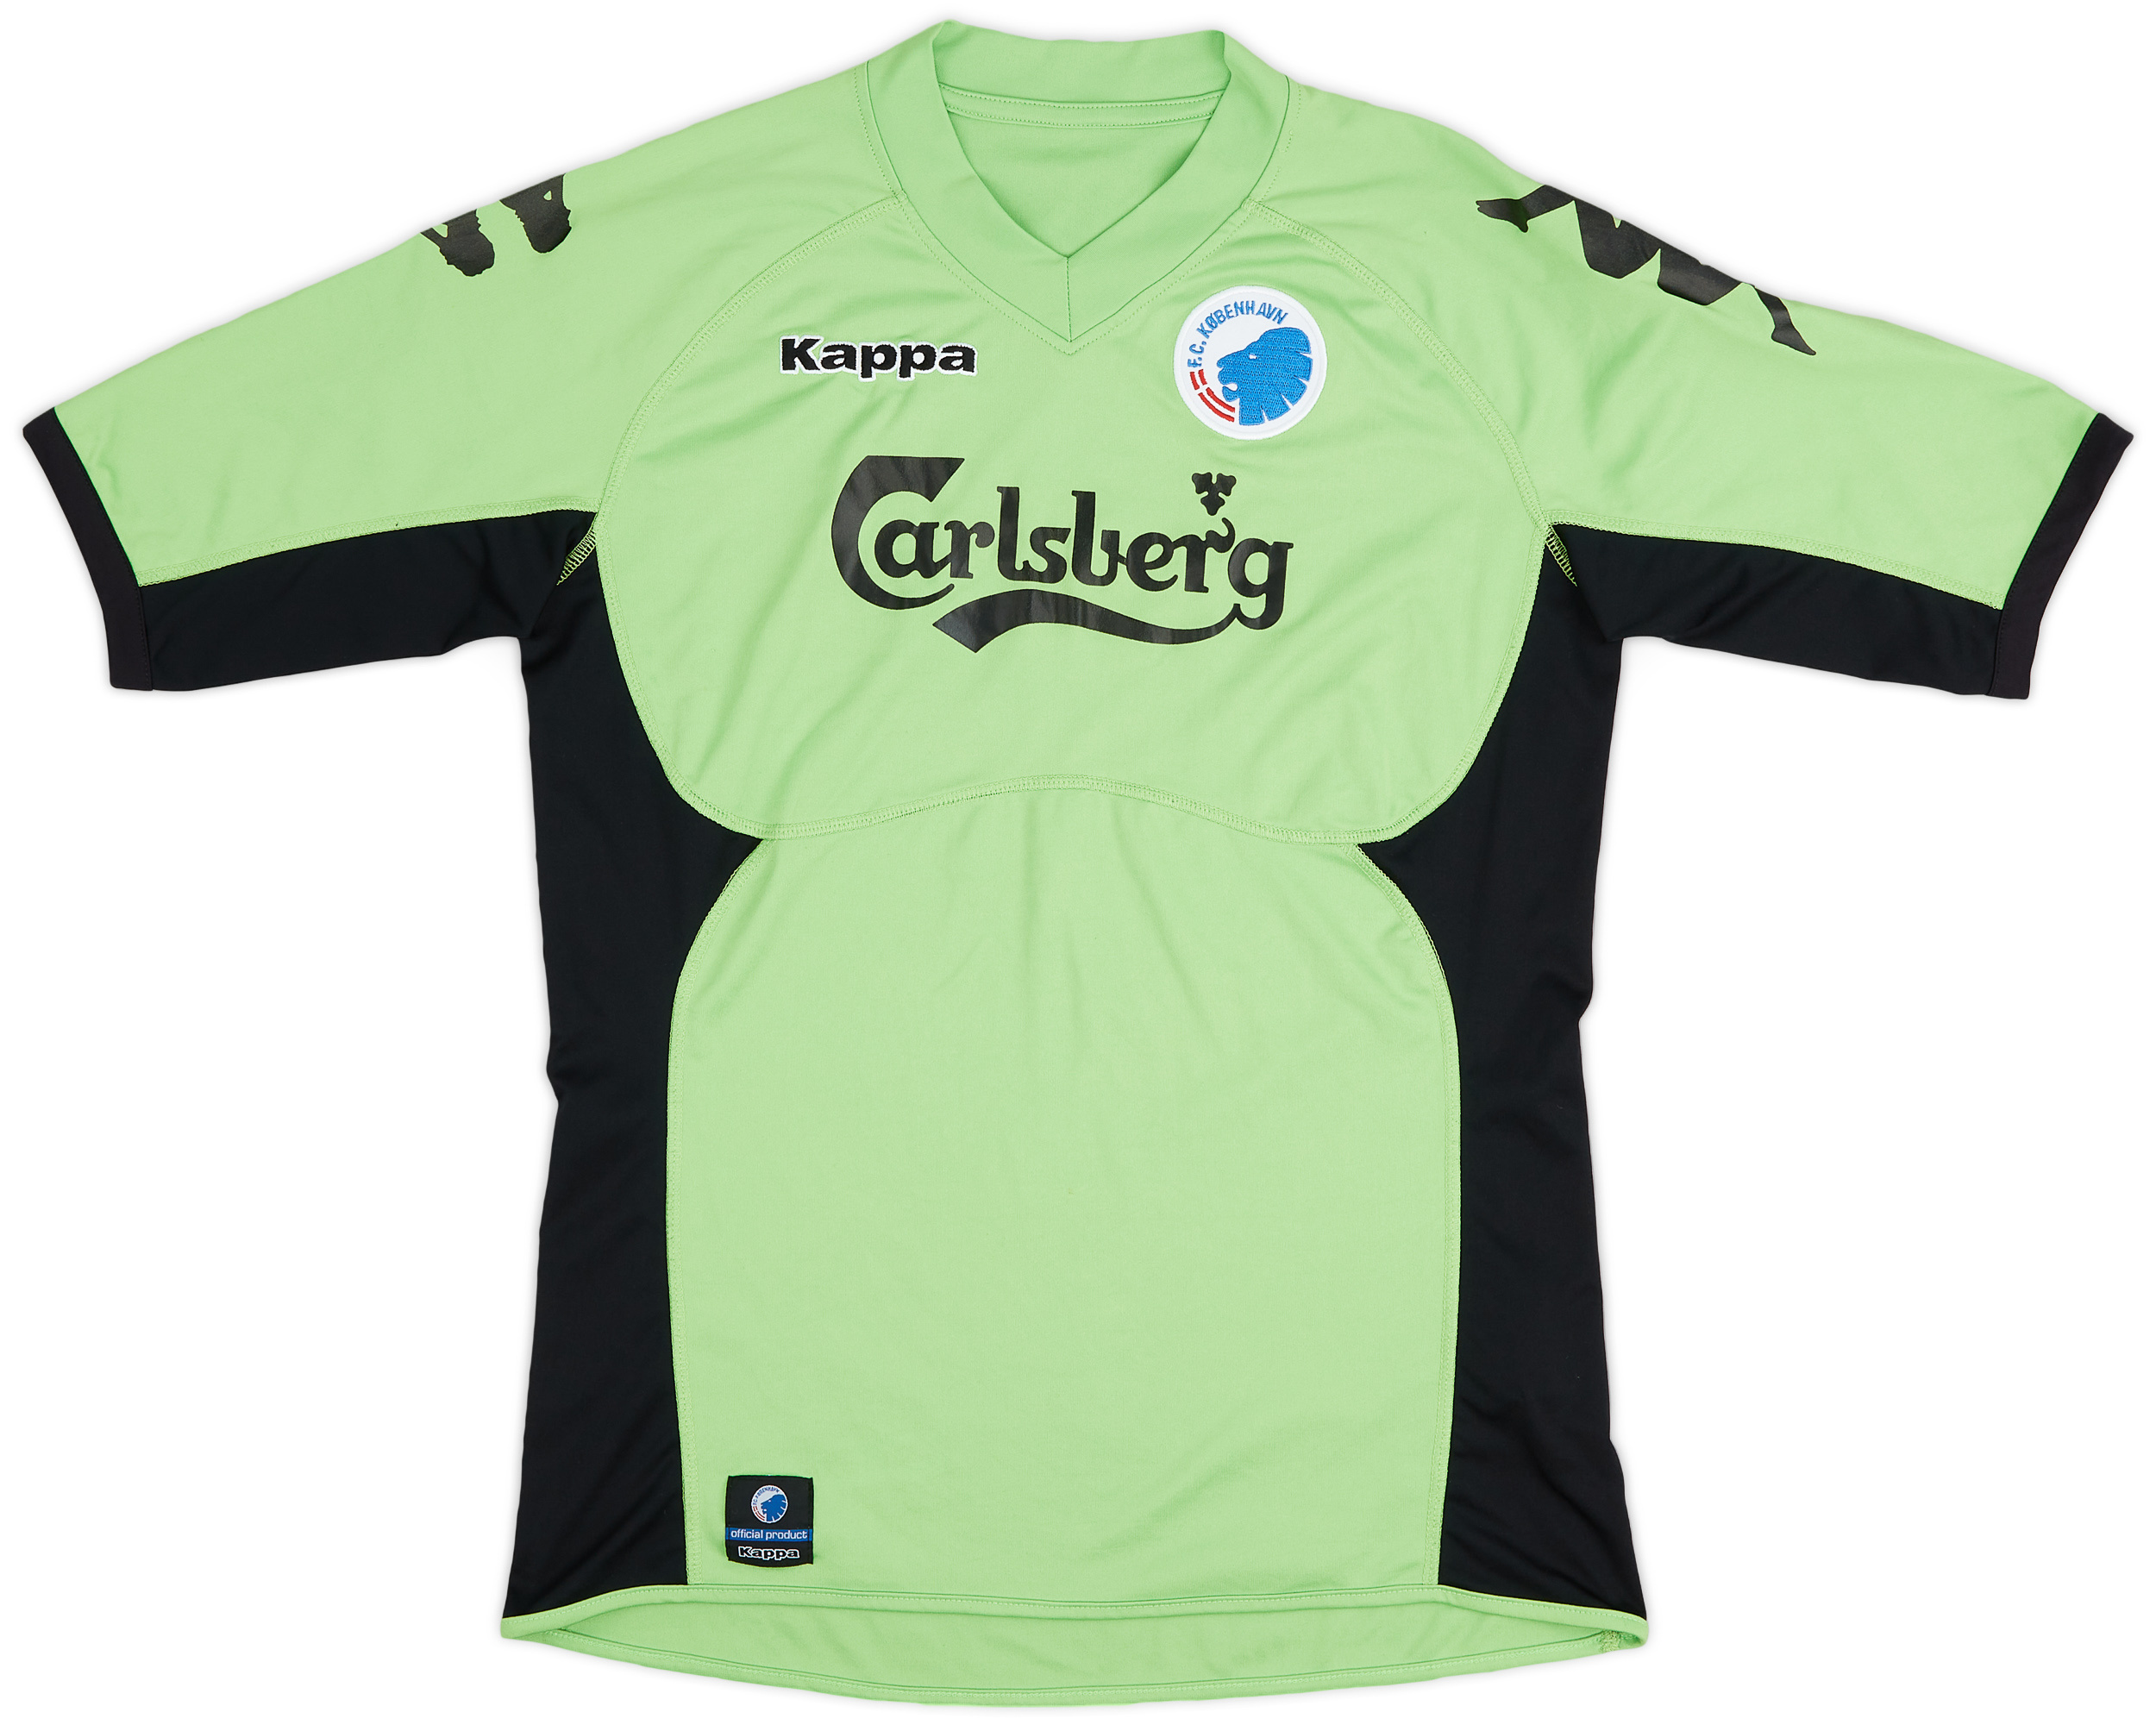 København  Derden  shirt  (Original)